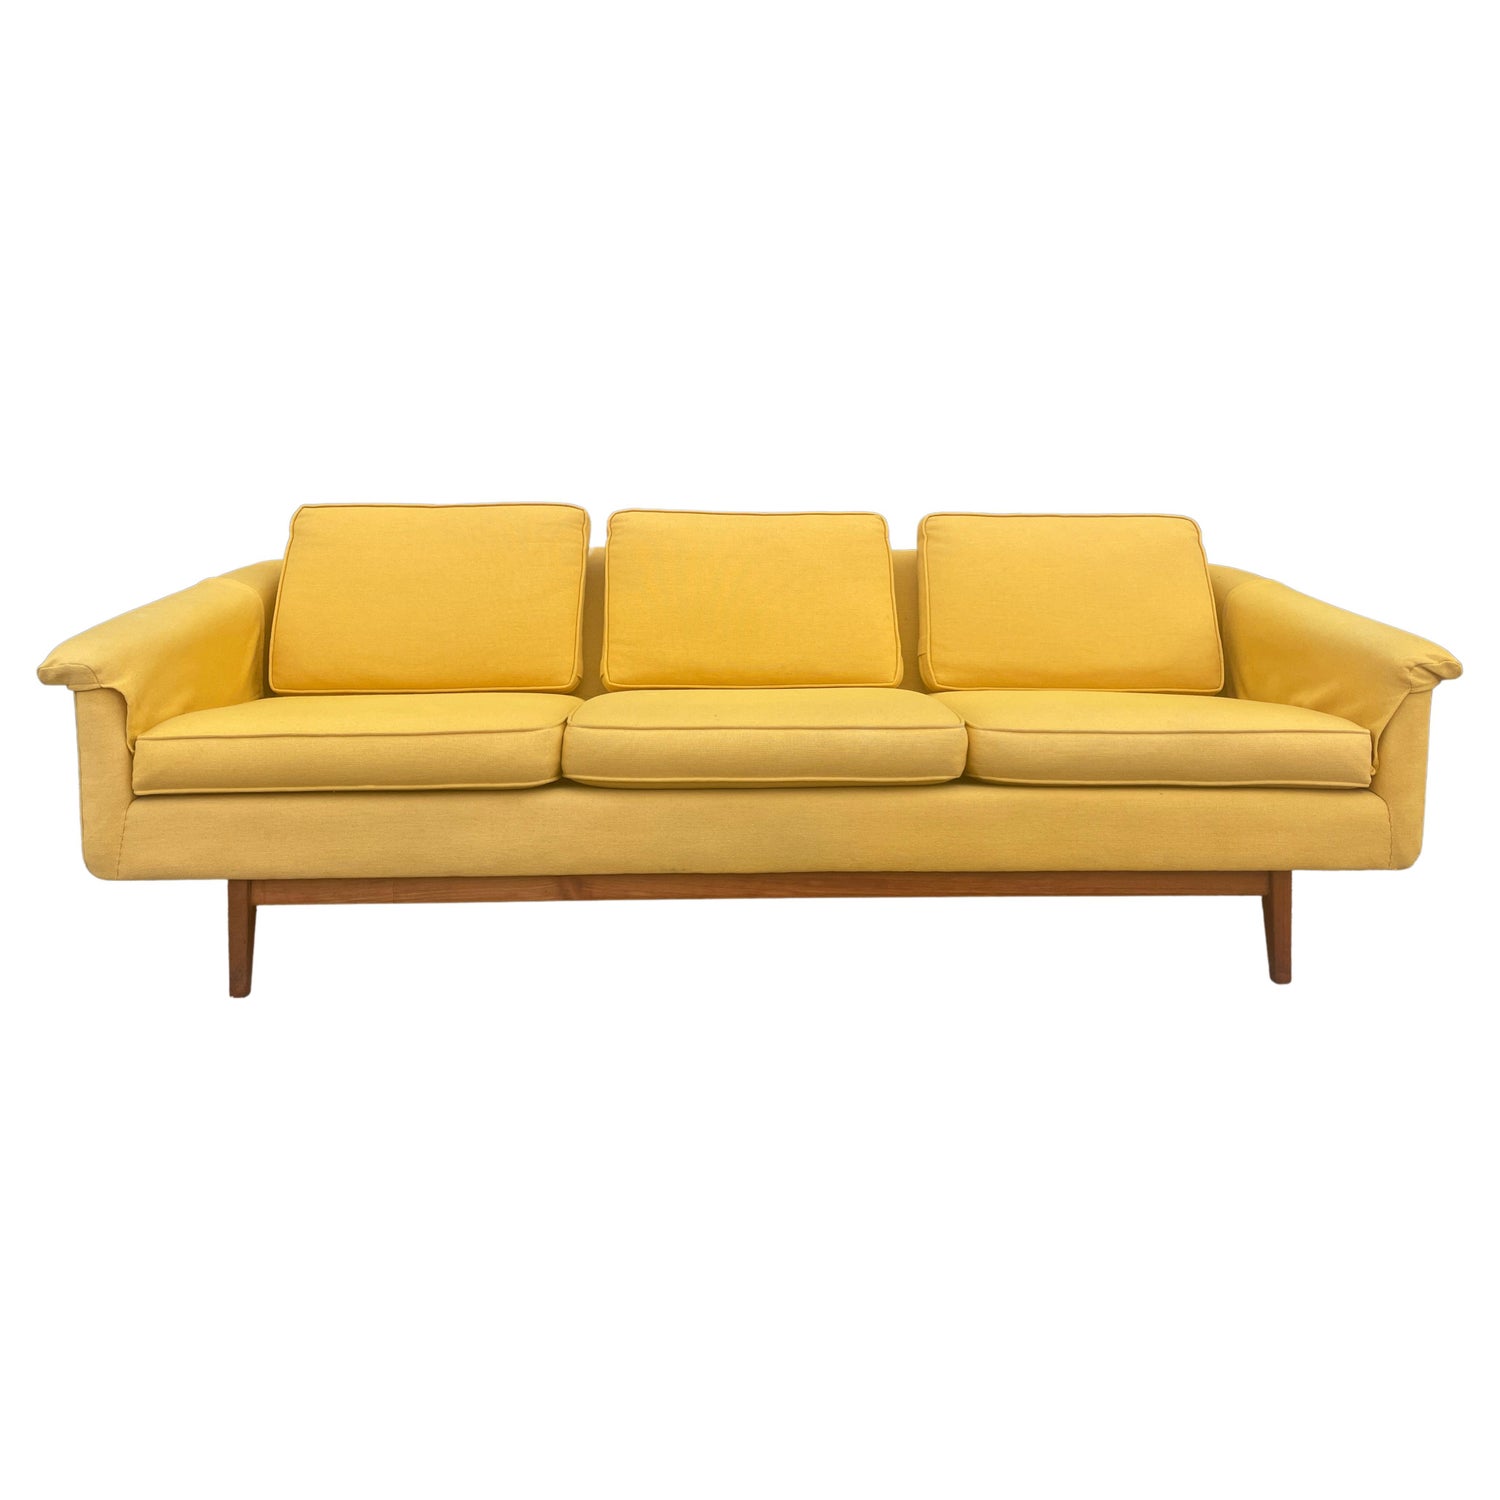 Dux of Sweden Sofas - 10 For Sale at 1stDibs | dux couch, dux sofa vintage,  dux sverige